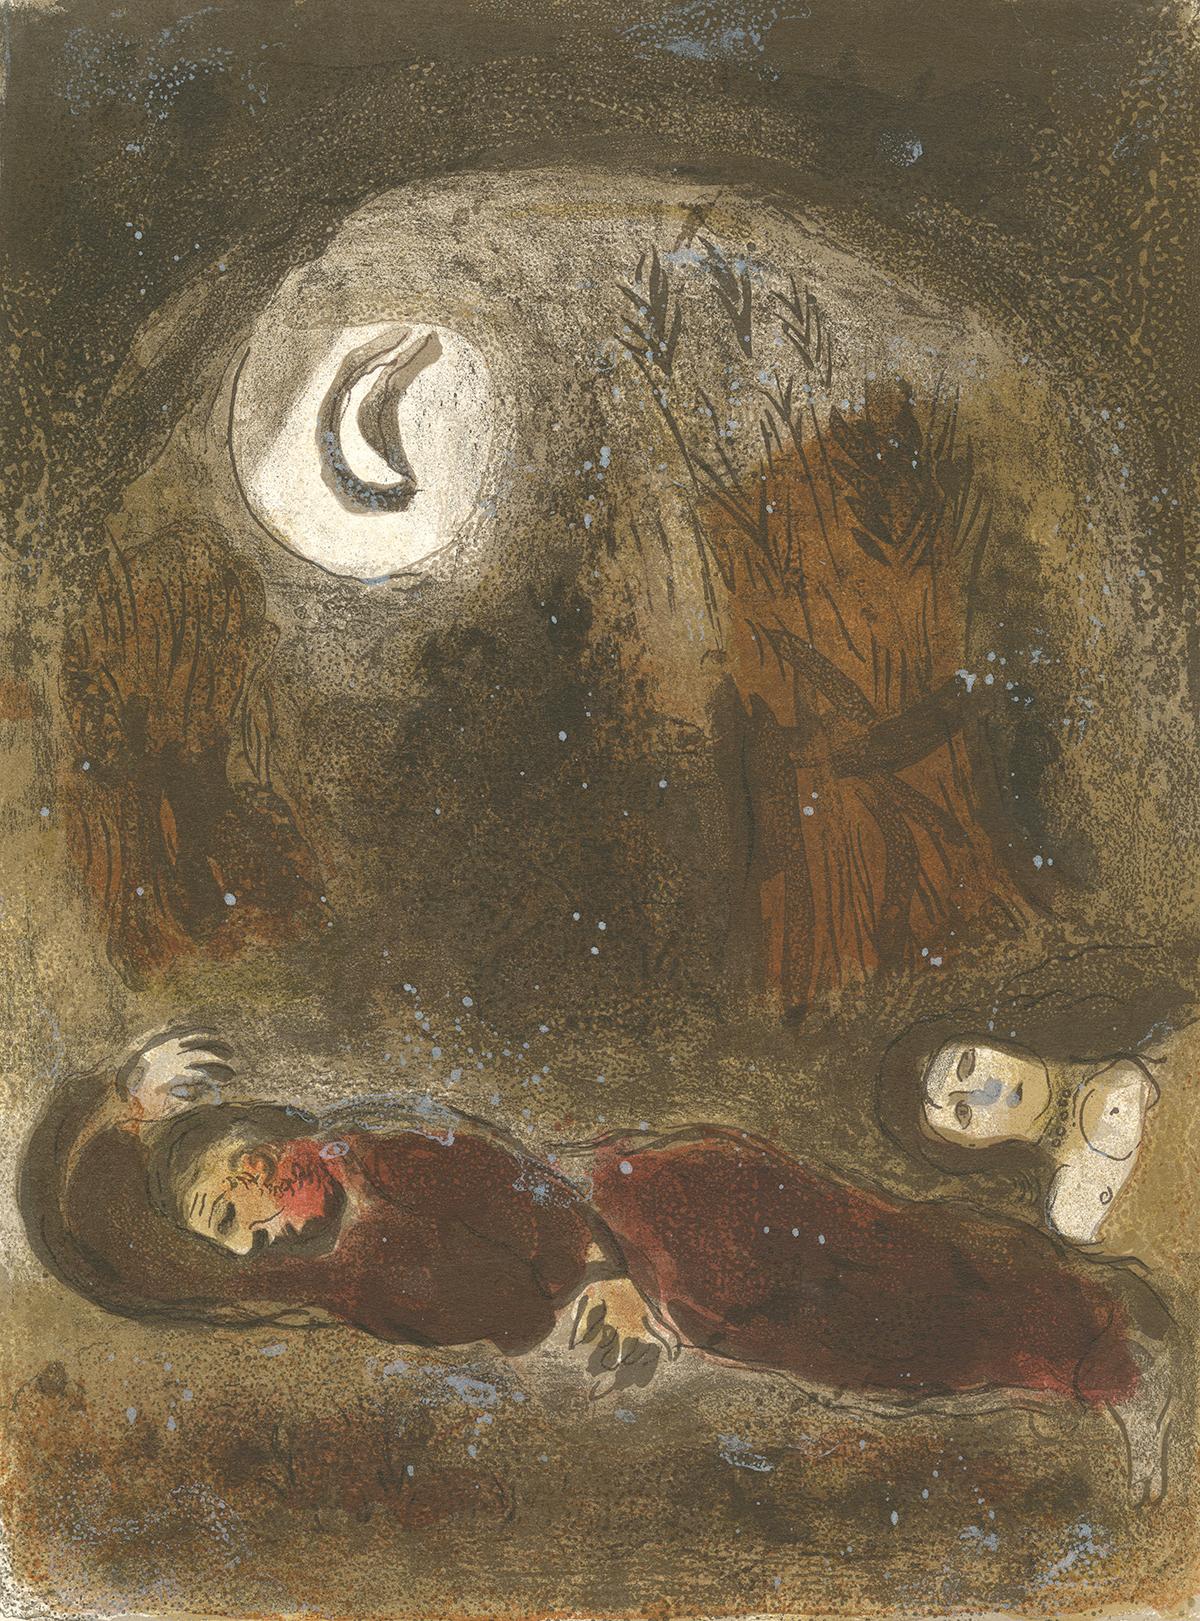 Figurative Print Marc Chagall - 20e siècle lithographie en couleurs brun foncé personnages allongés endormis lune